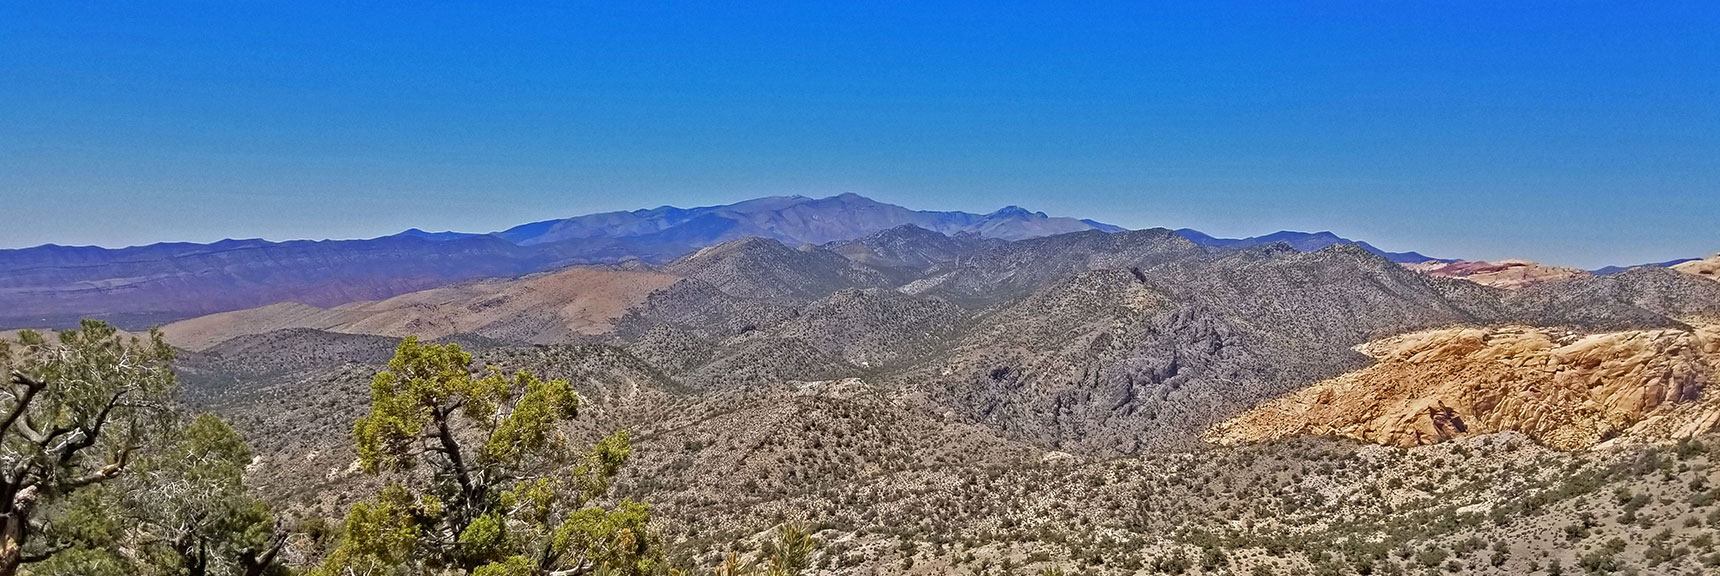 View Northwest from Ridgeline to Mt. Charleston Wilderness in Far Background | Rainbow Mountains Upper Crest Ridge, Nevada